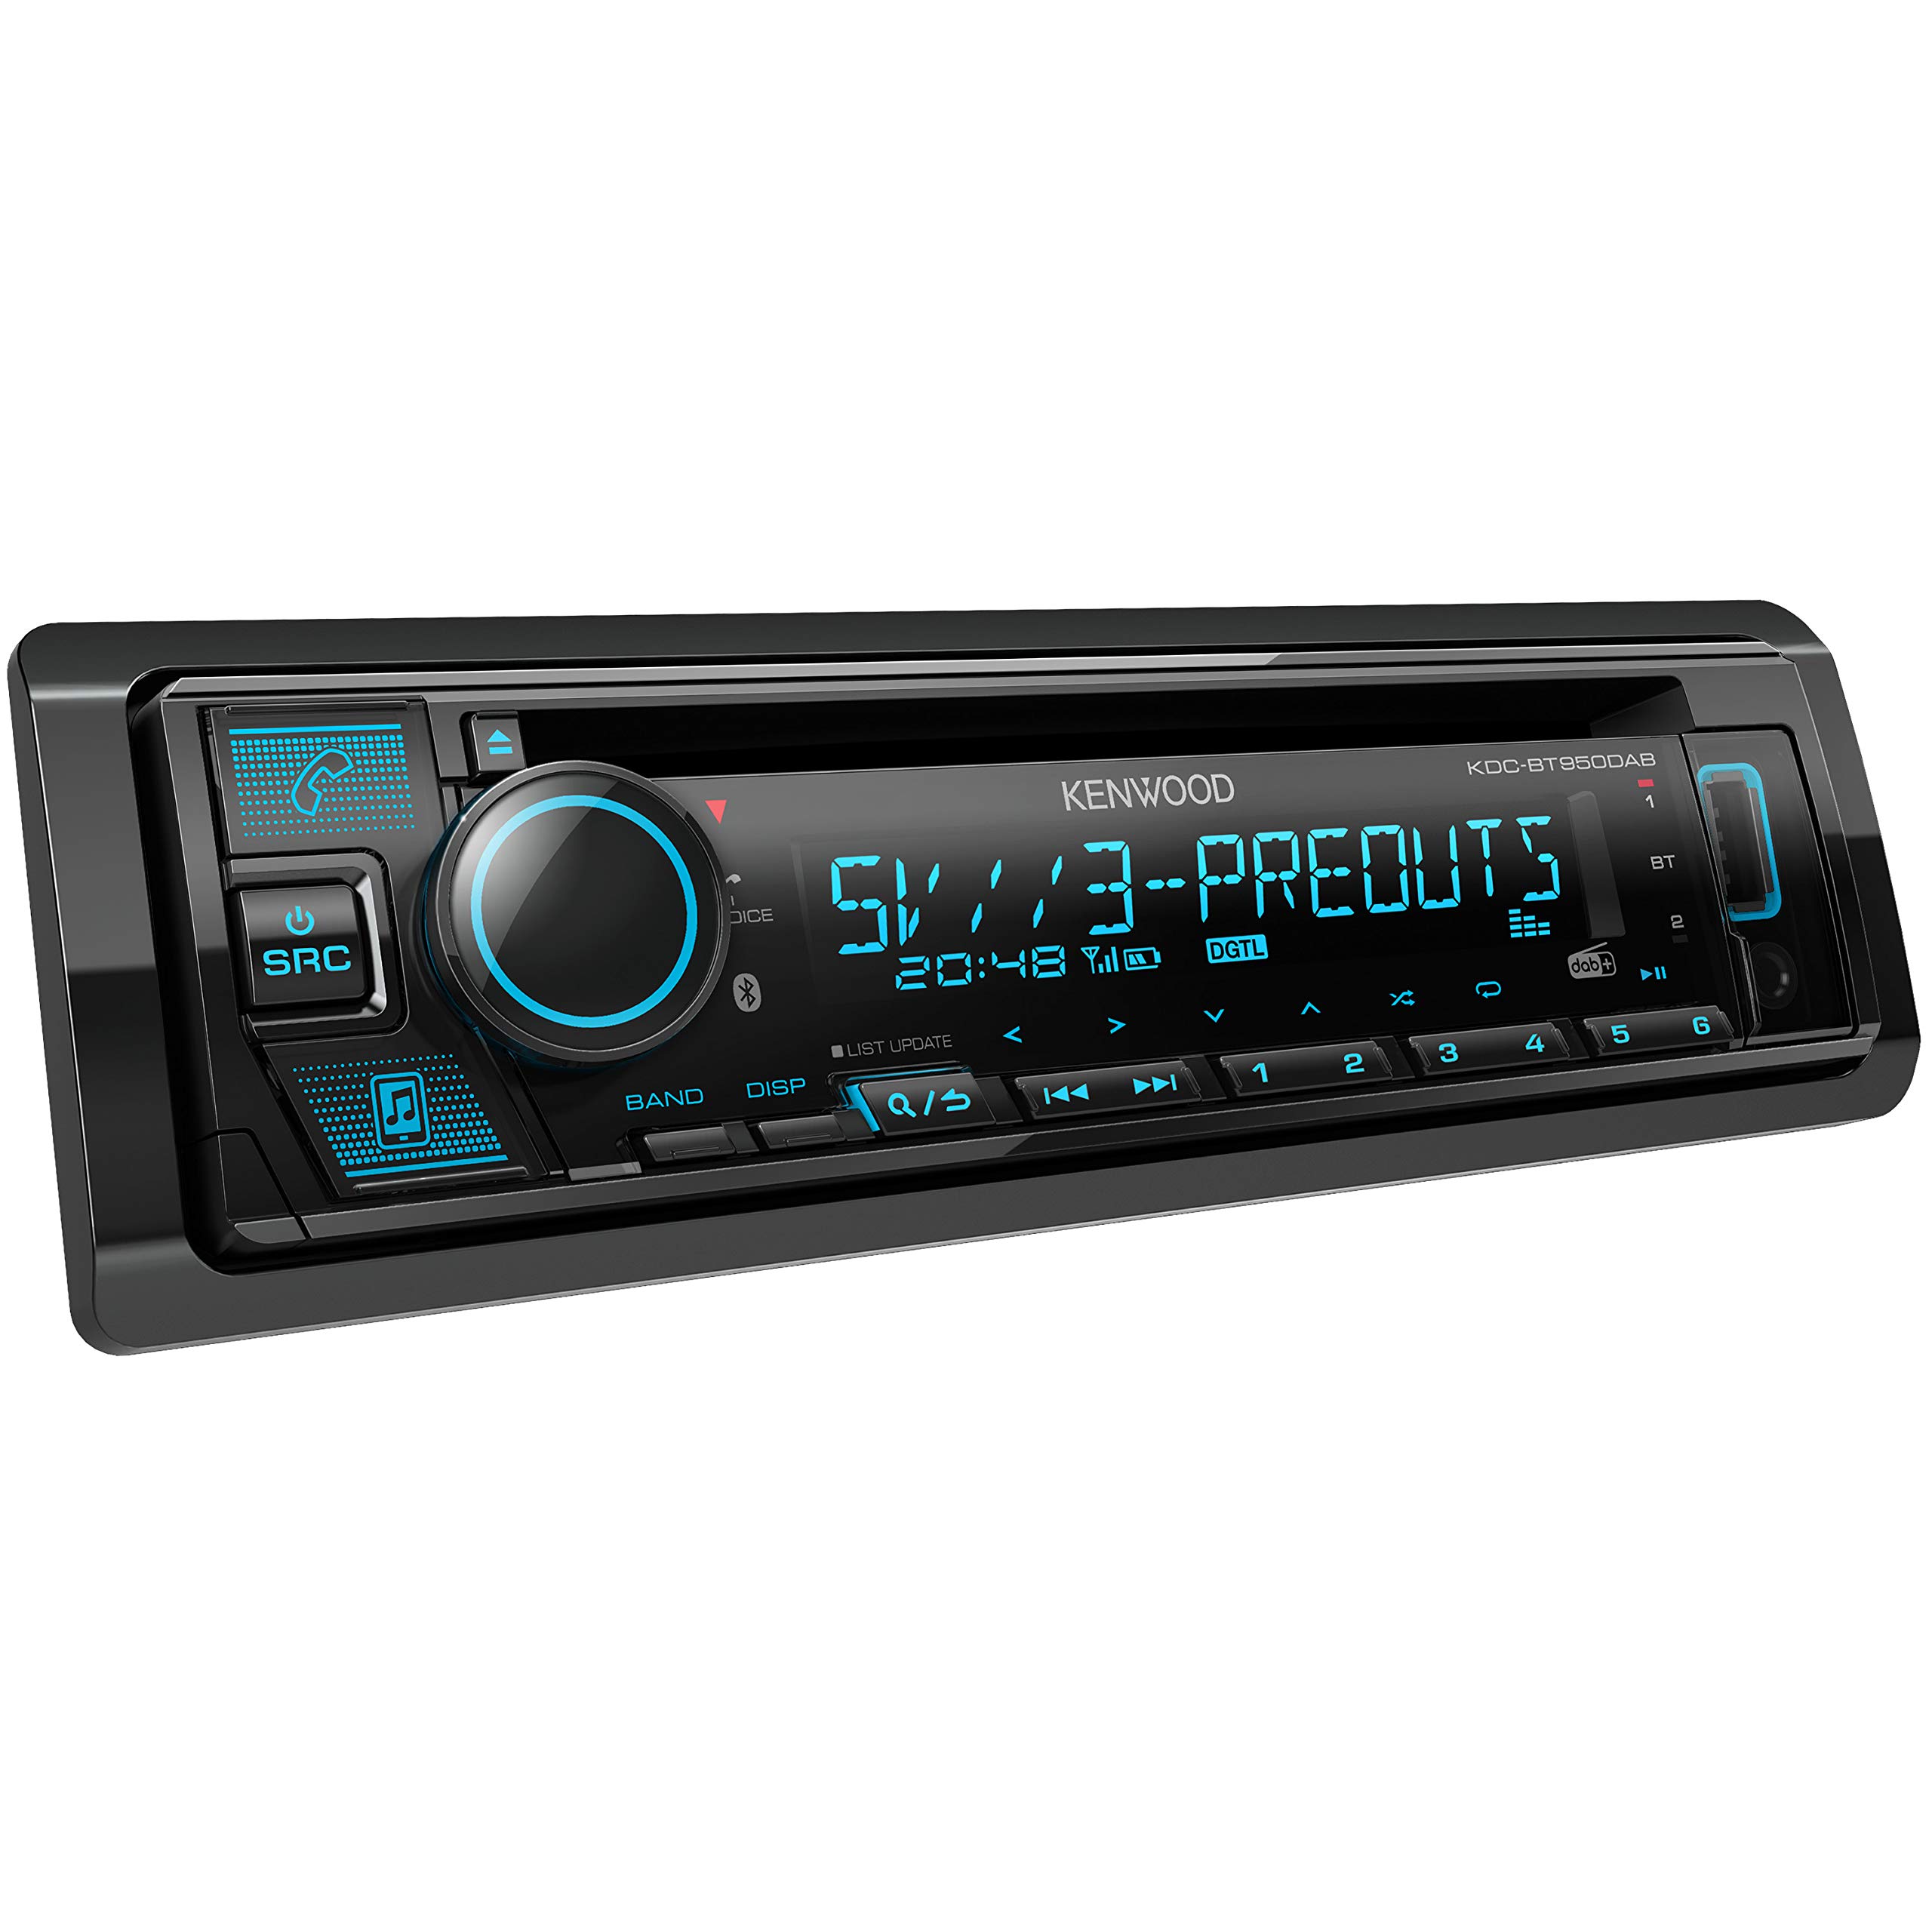 Kenwood KDC-BT950DAB CD-Autoradio mit DAB+ & Bluetooth Freisprecheinrichtung (USB, AUX-In, Hochleistungstuner, Spotify Control, Soundprozessor, 4x50 W, var. Beleuchtung, DAB+ Antenne)